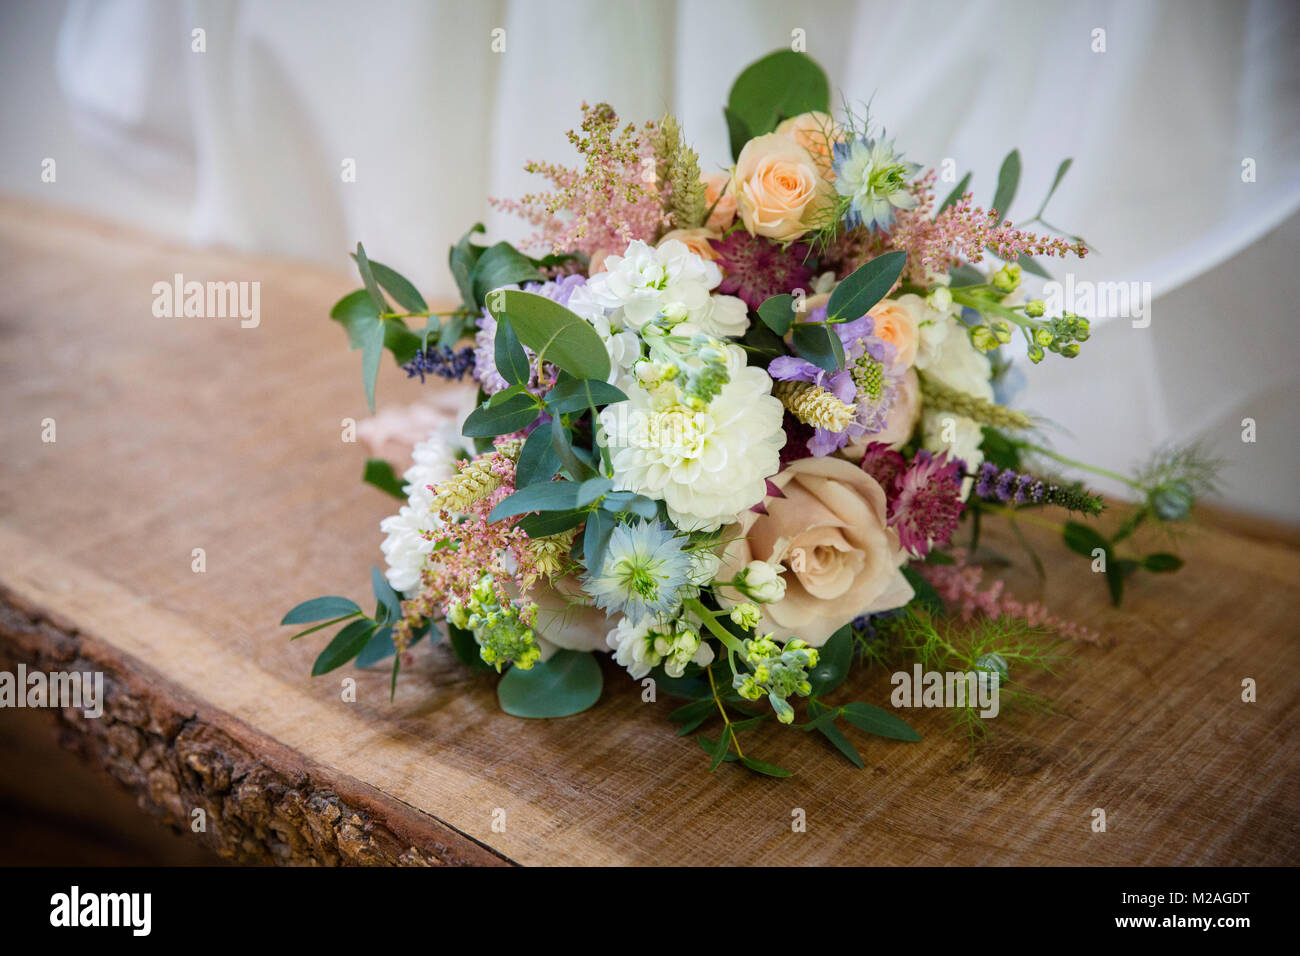 Colorato addobbo floreale sul tavolo di legno, close up Foto Stock